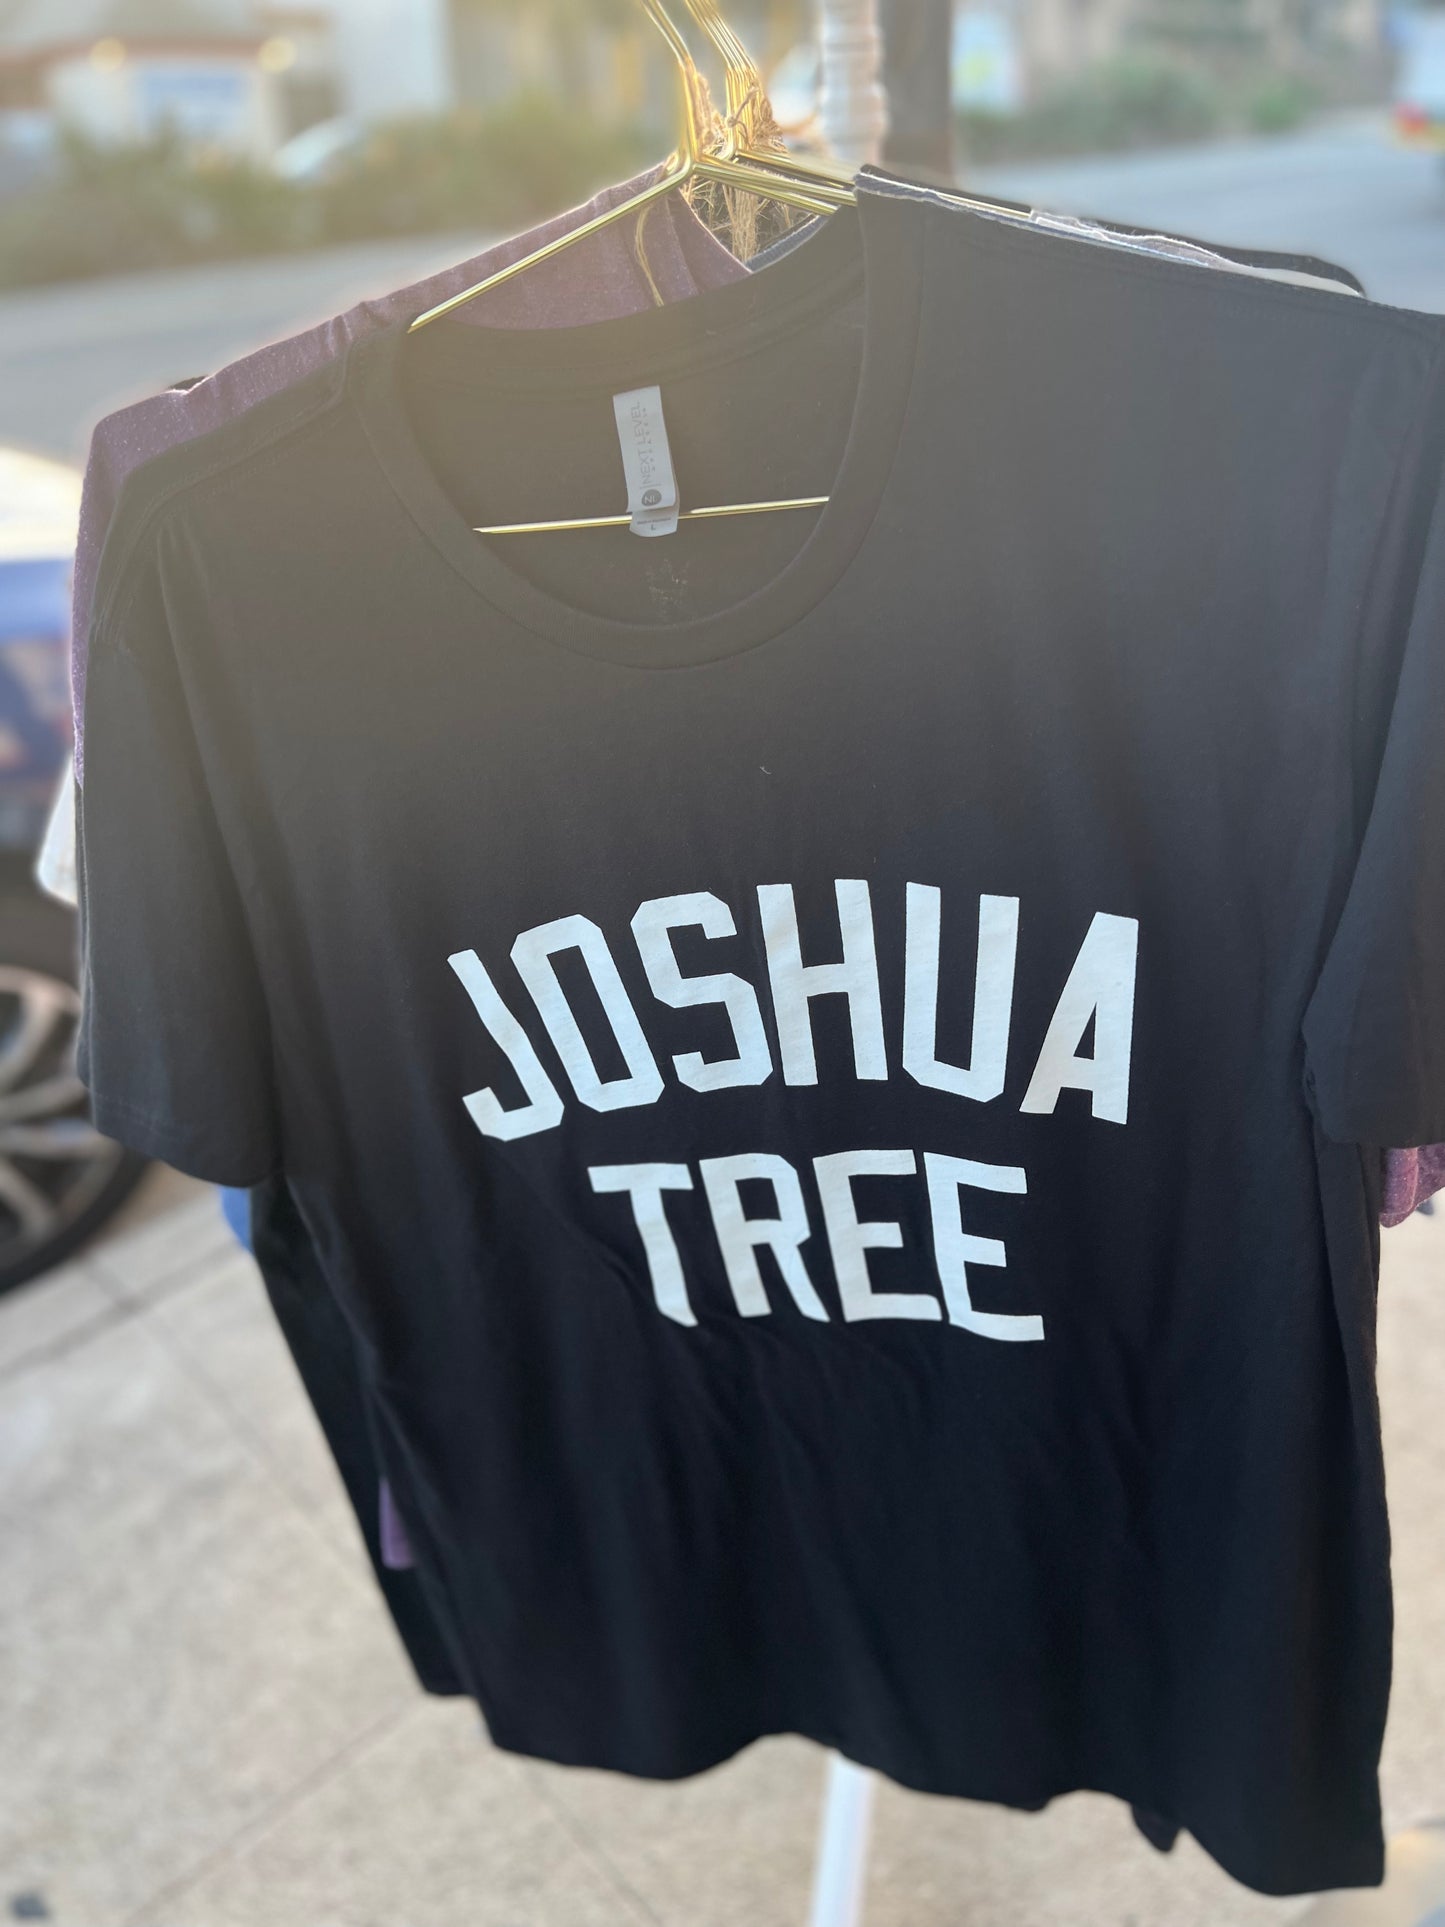 Joshua Tree TShirt